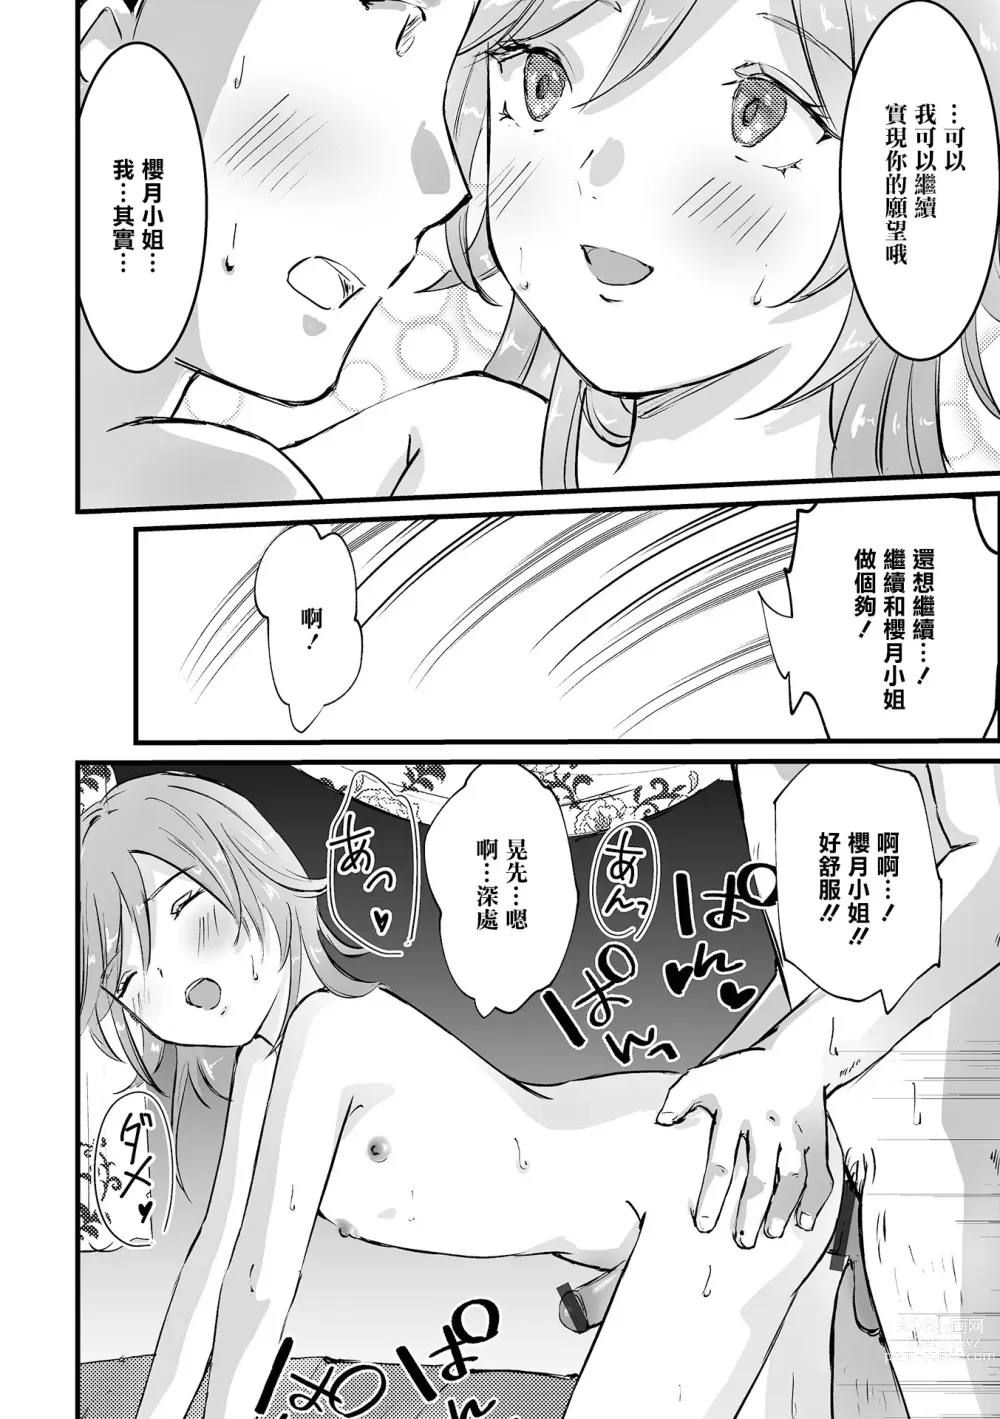 Page 14 of manga Uranaikan Anata no Yume o Kanaemasu